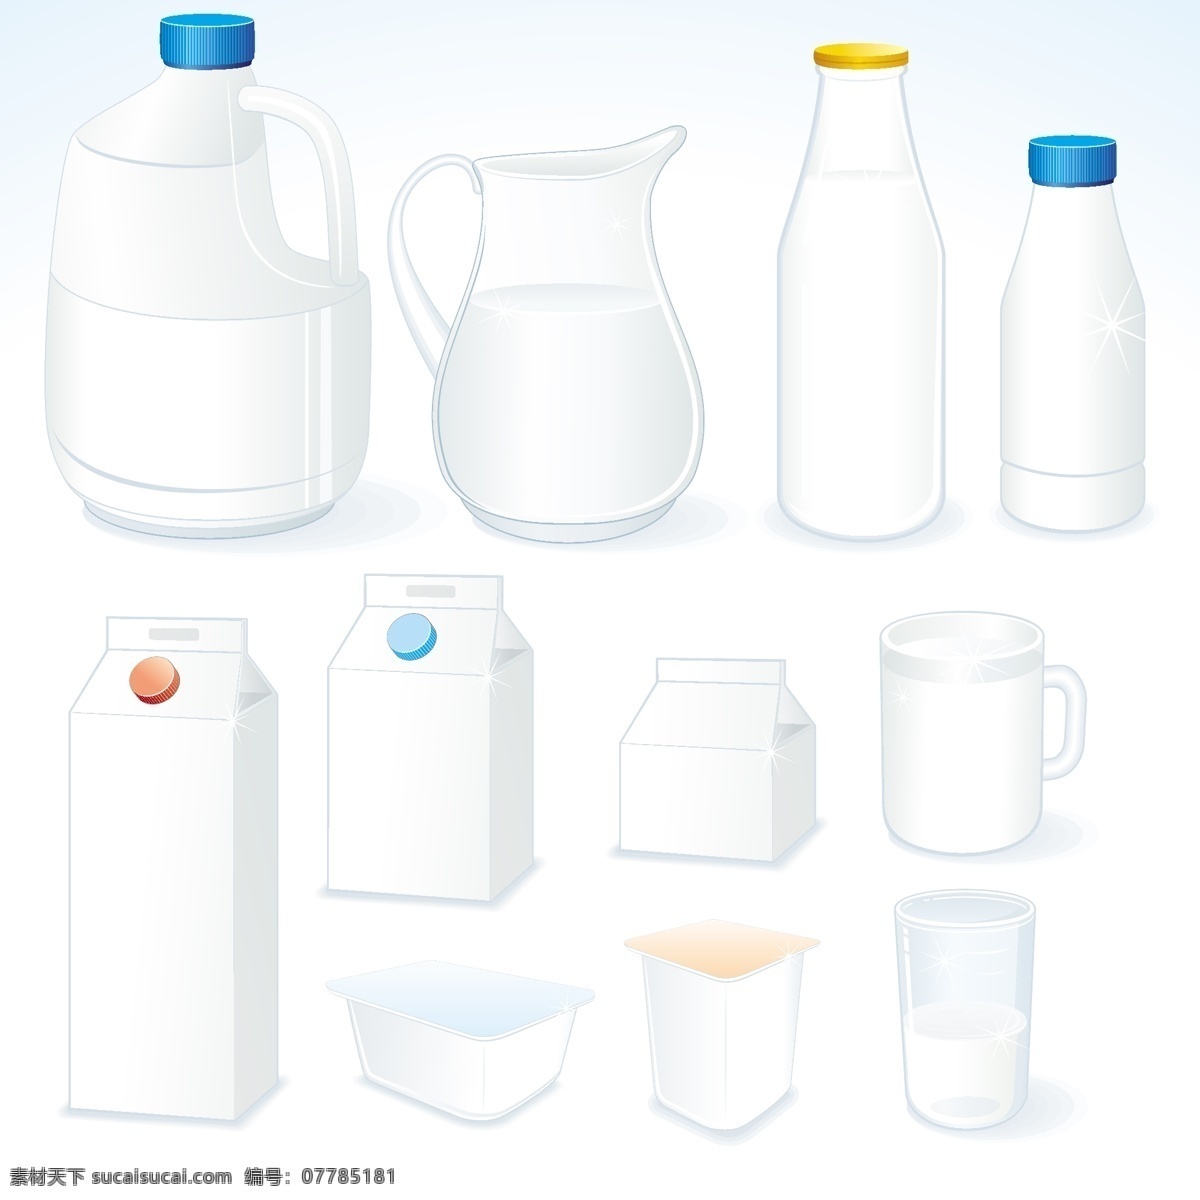 牛奶 包装 矢量 杯子 空白 牛奶盒 瓶子 矢量素材 水壶 纸盒 塑料瓶 矢量图 日常生活